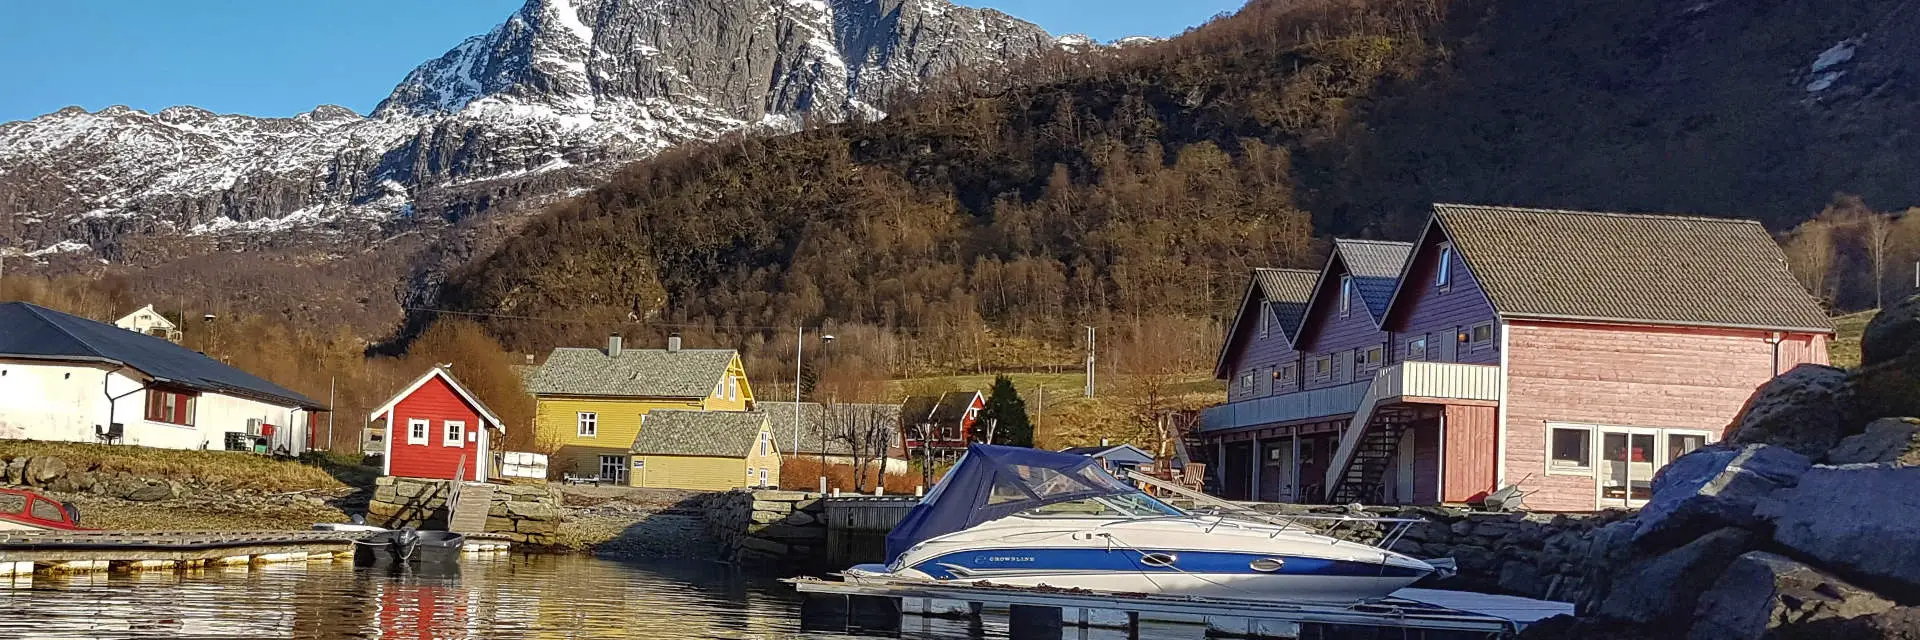 Unterkunft in Norwegen